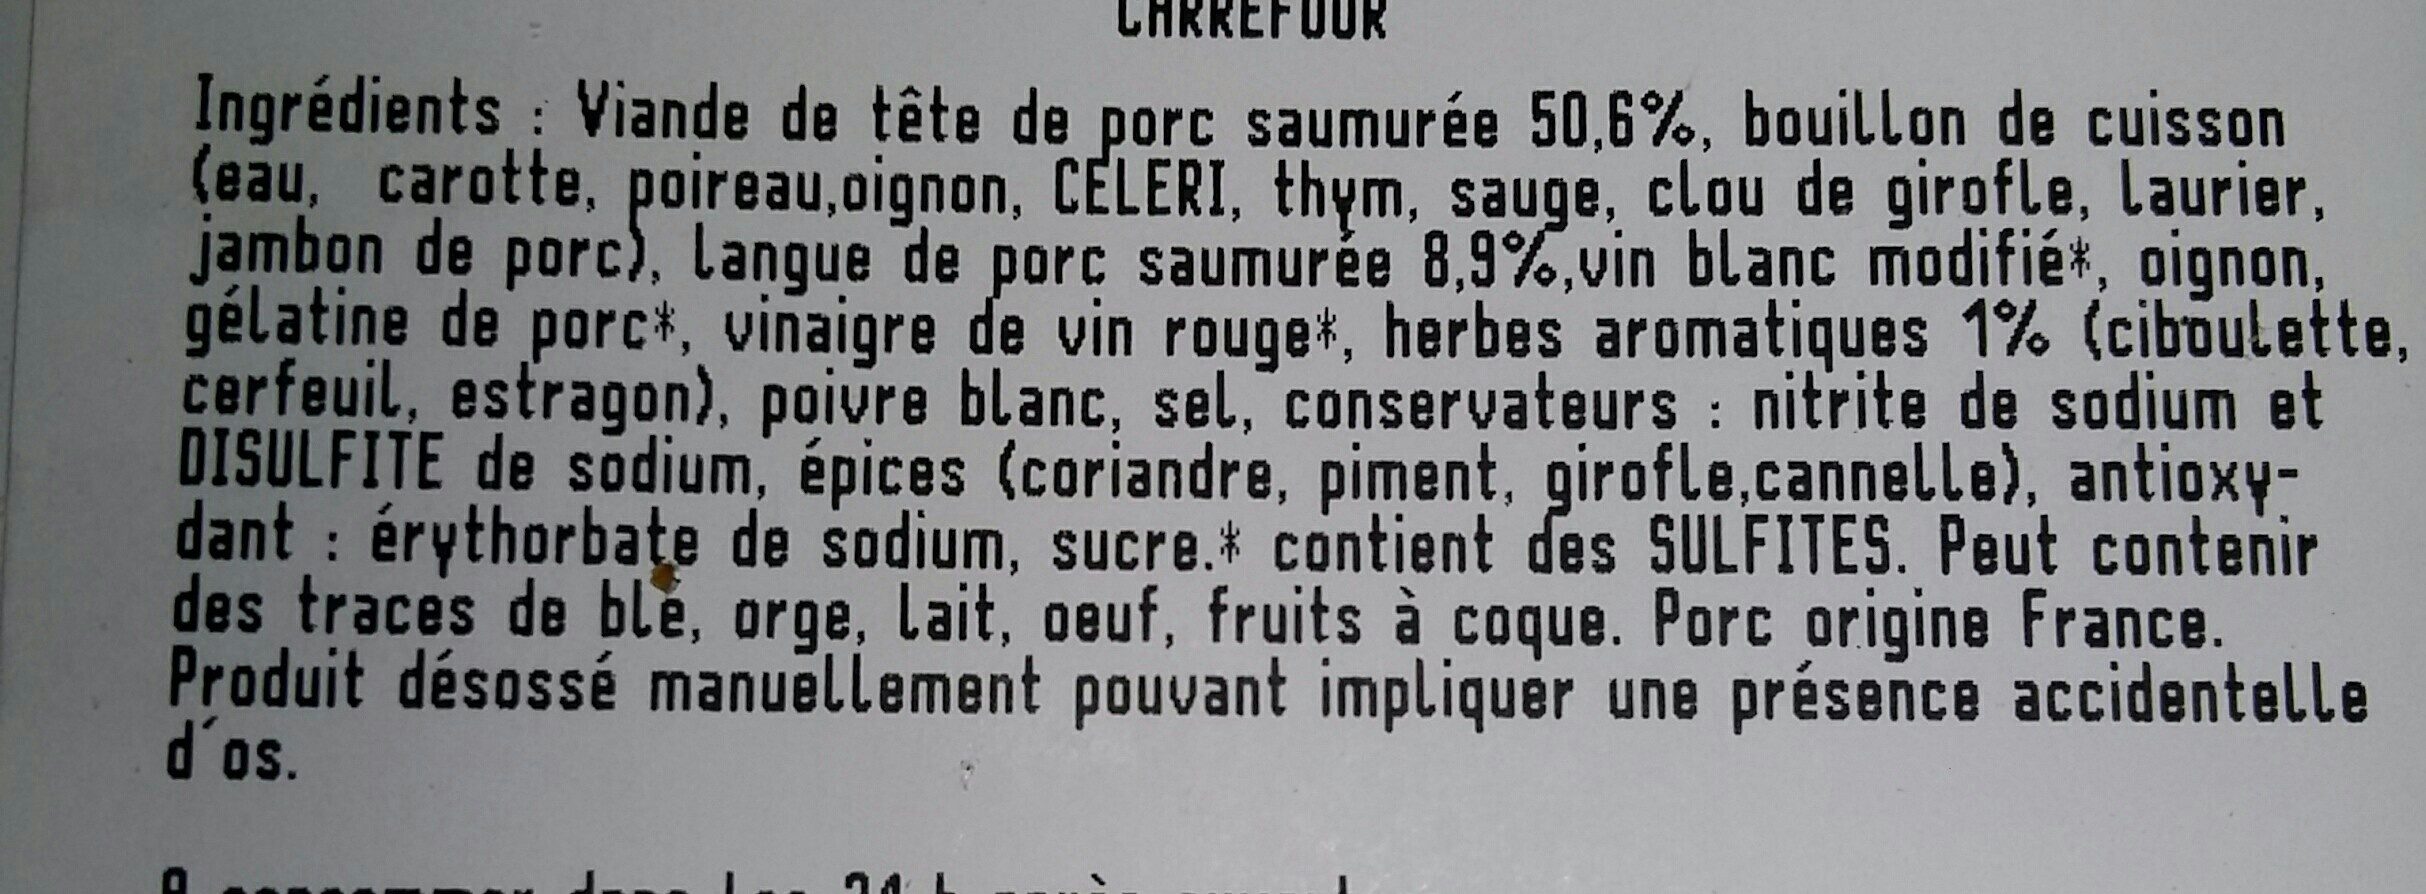 Fromage de tête aux herbes - Ingrédients